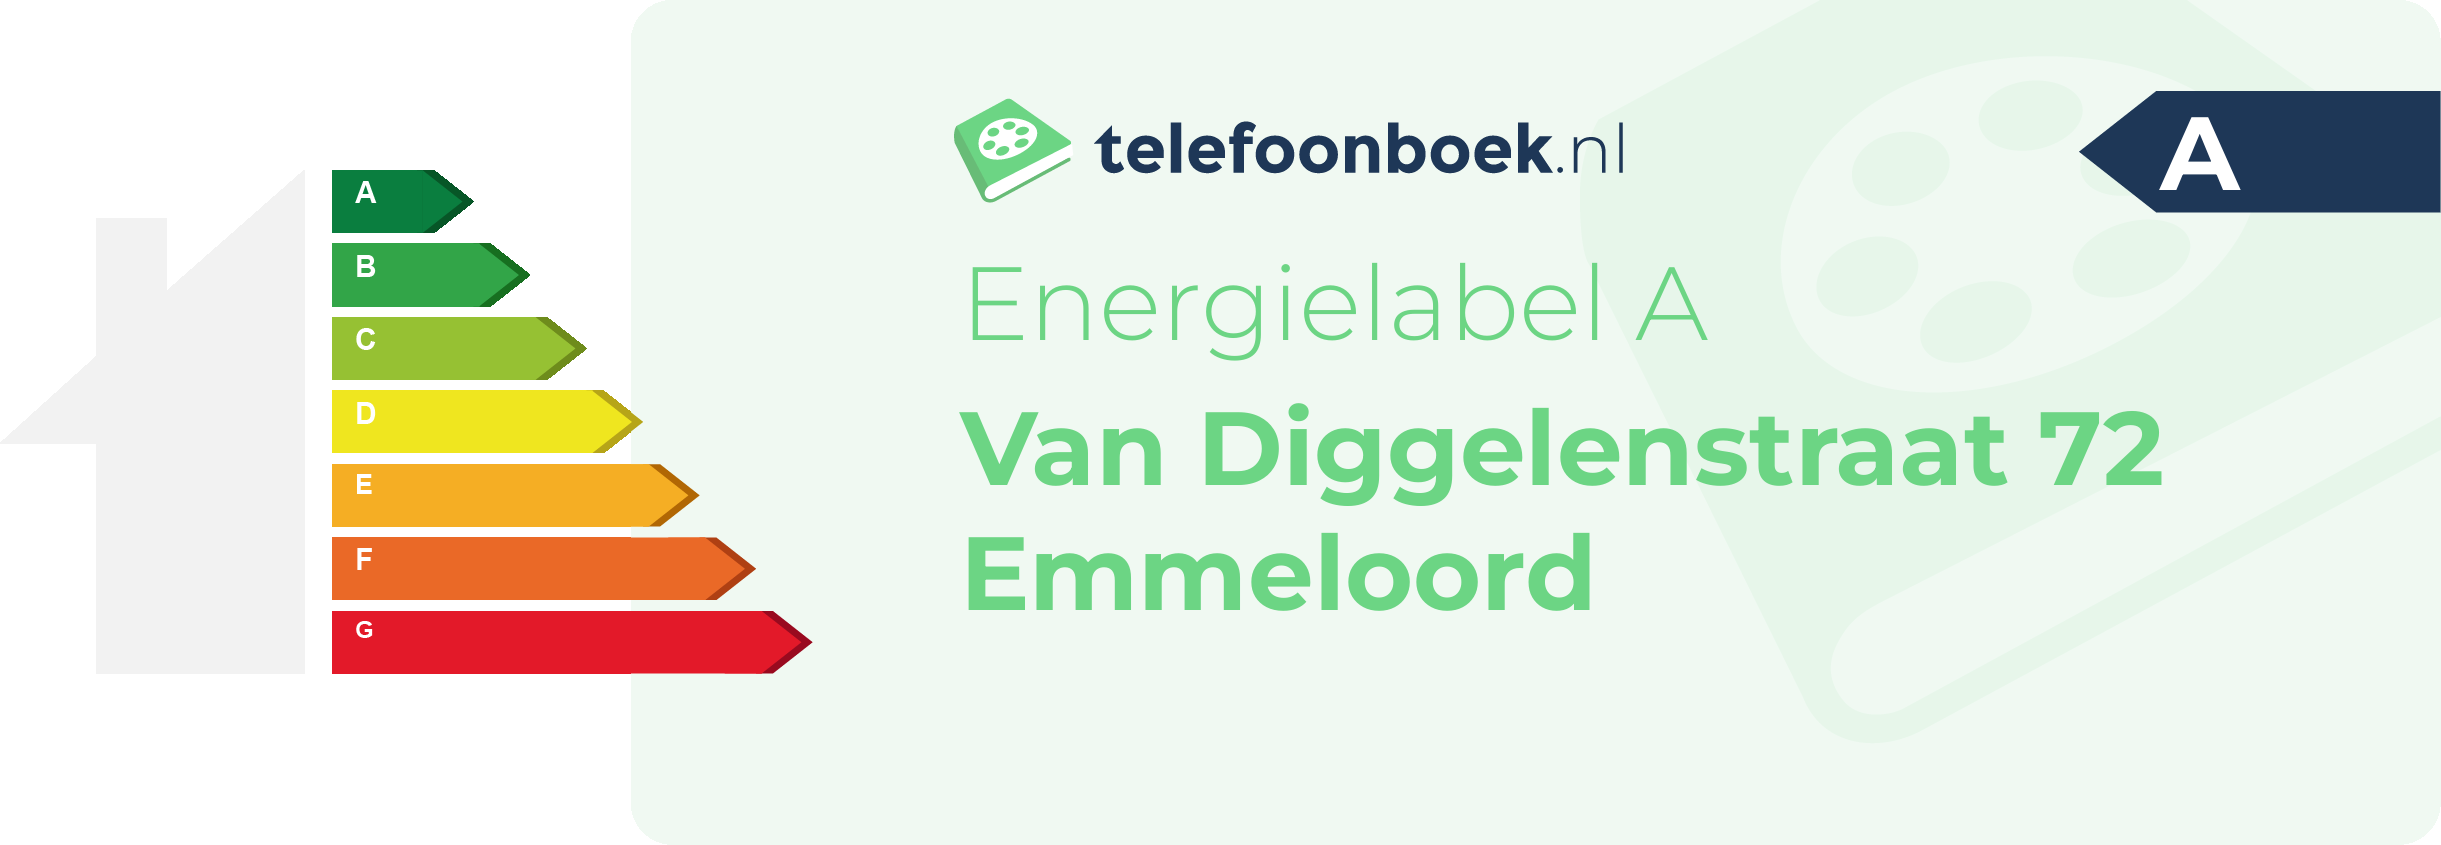 Energielabel Van Diggelenstraat 72 Emmeloord